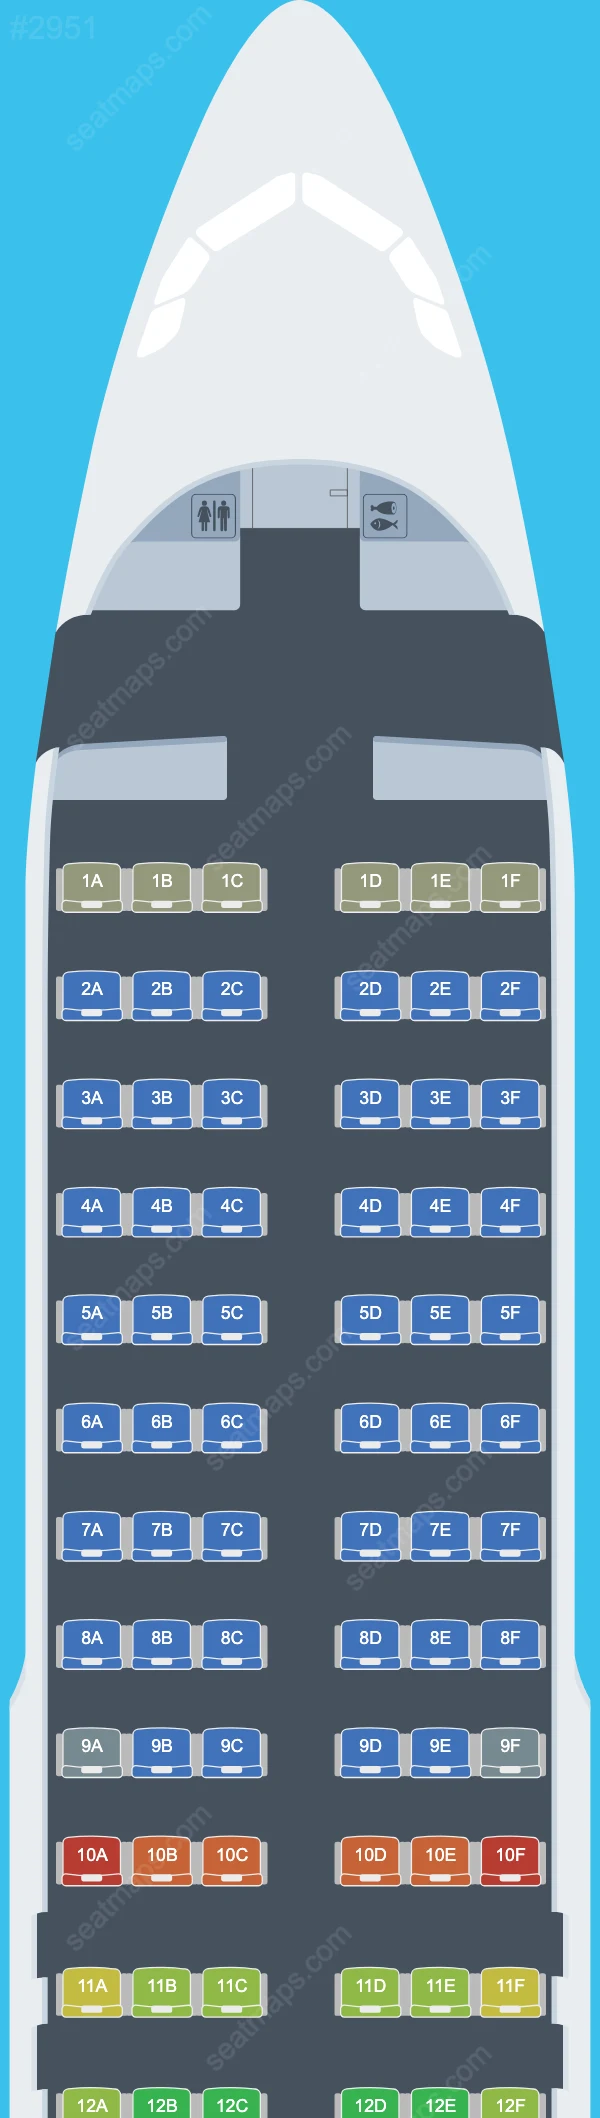 Air Arabia Airbus A320 Seat Maps A320-200